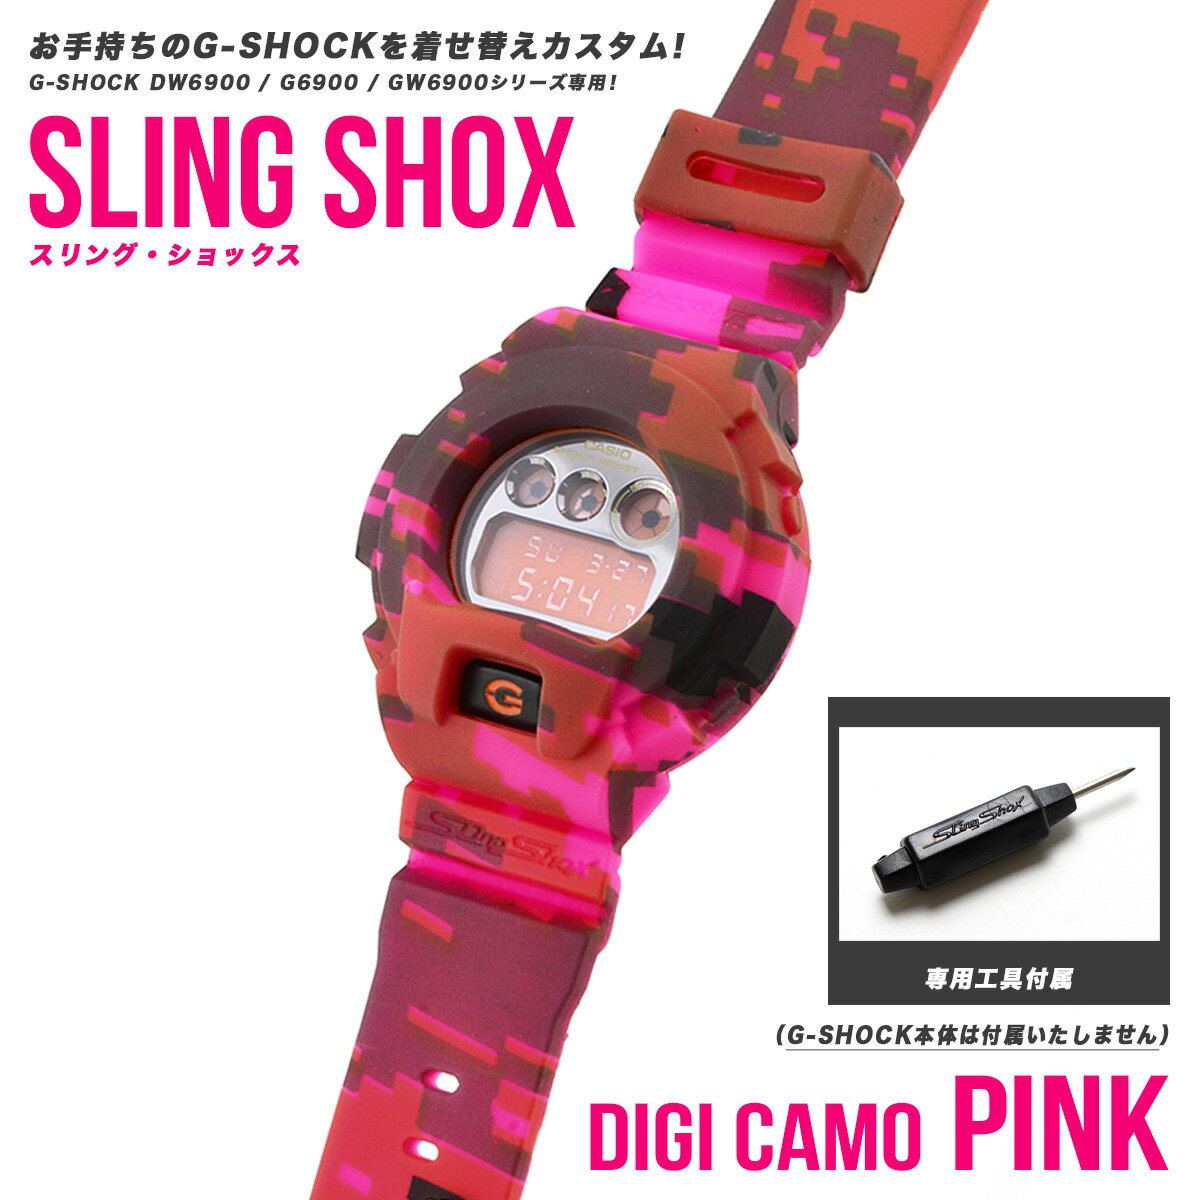 腕時計, メンズ腕時計 G-SHOCK SLING SHOX G-shock DW6900 DW-6900 G6900 G-6900 GW6900 GW-6900 gshock g G